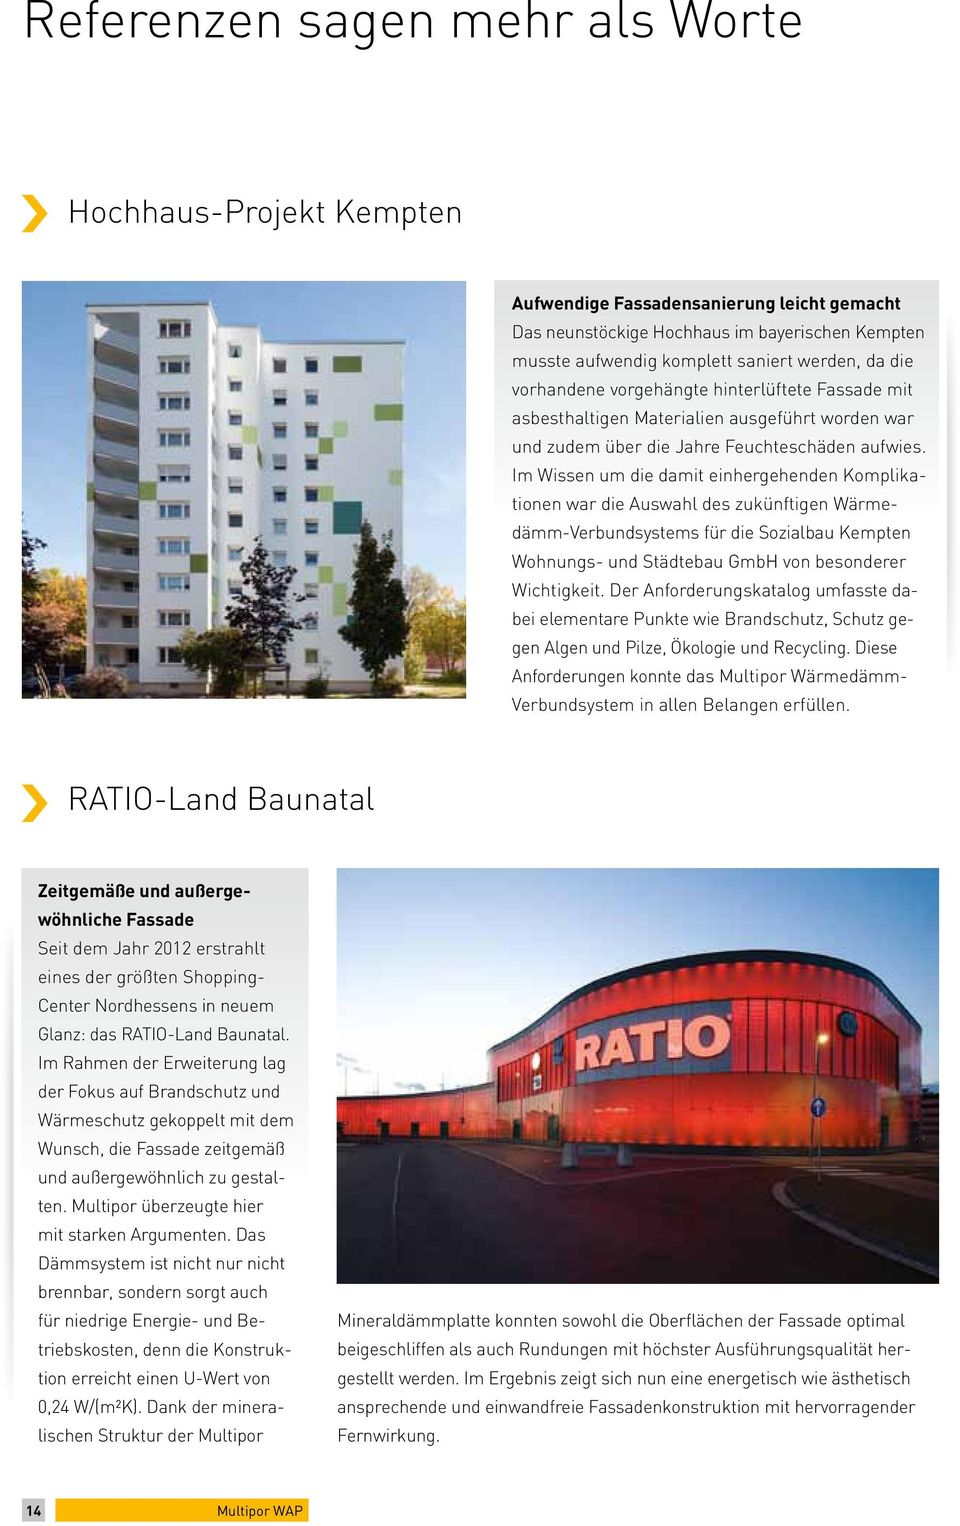 Im Wissen um die damit einhergehenden Komplikationen war die Auswahl des zukünftigen Wärmedämm-Verbundsystems für die Sozialbau Kempten Wohnungs- und Städtebau GmbH von besonderer Wichtigkeit.